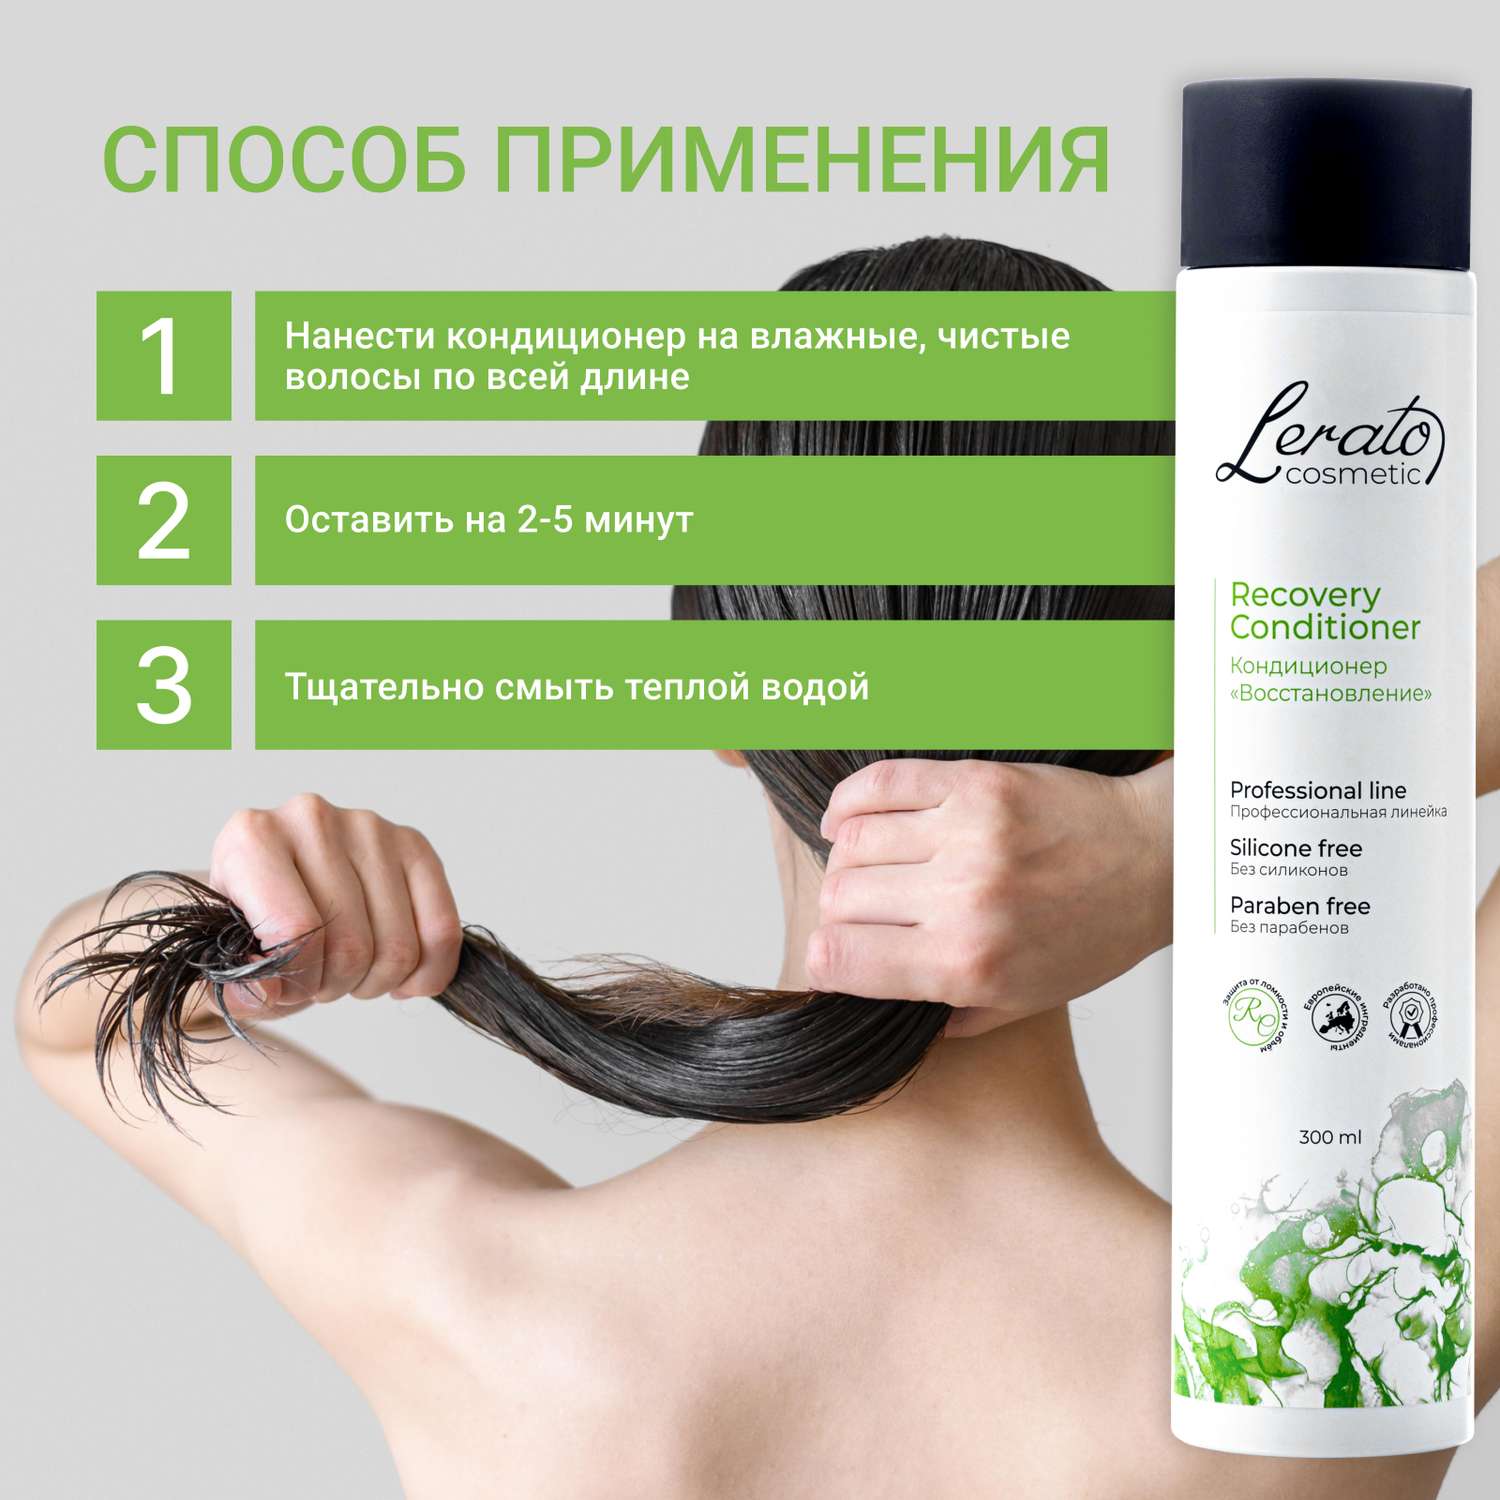 Кондиционер женский Lerato Cosmetic бальзам для восстановления поврежденных и склонных к выпадению волос 300 мл - фото 5